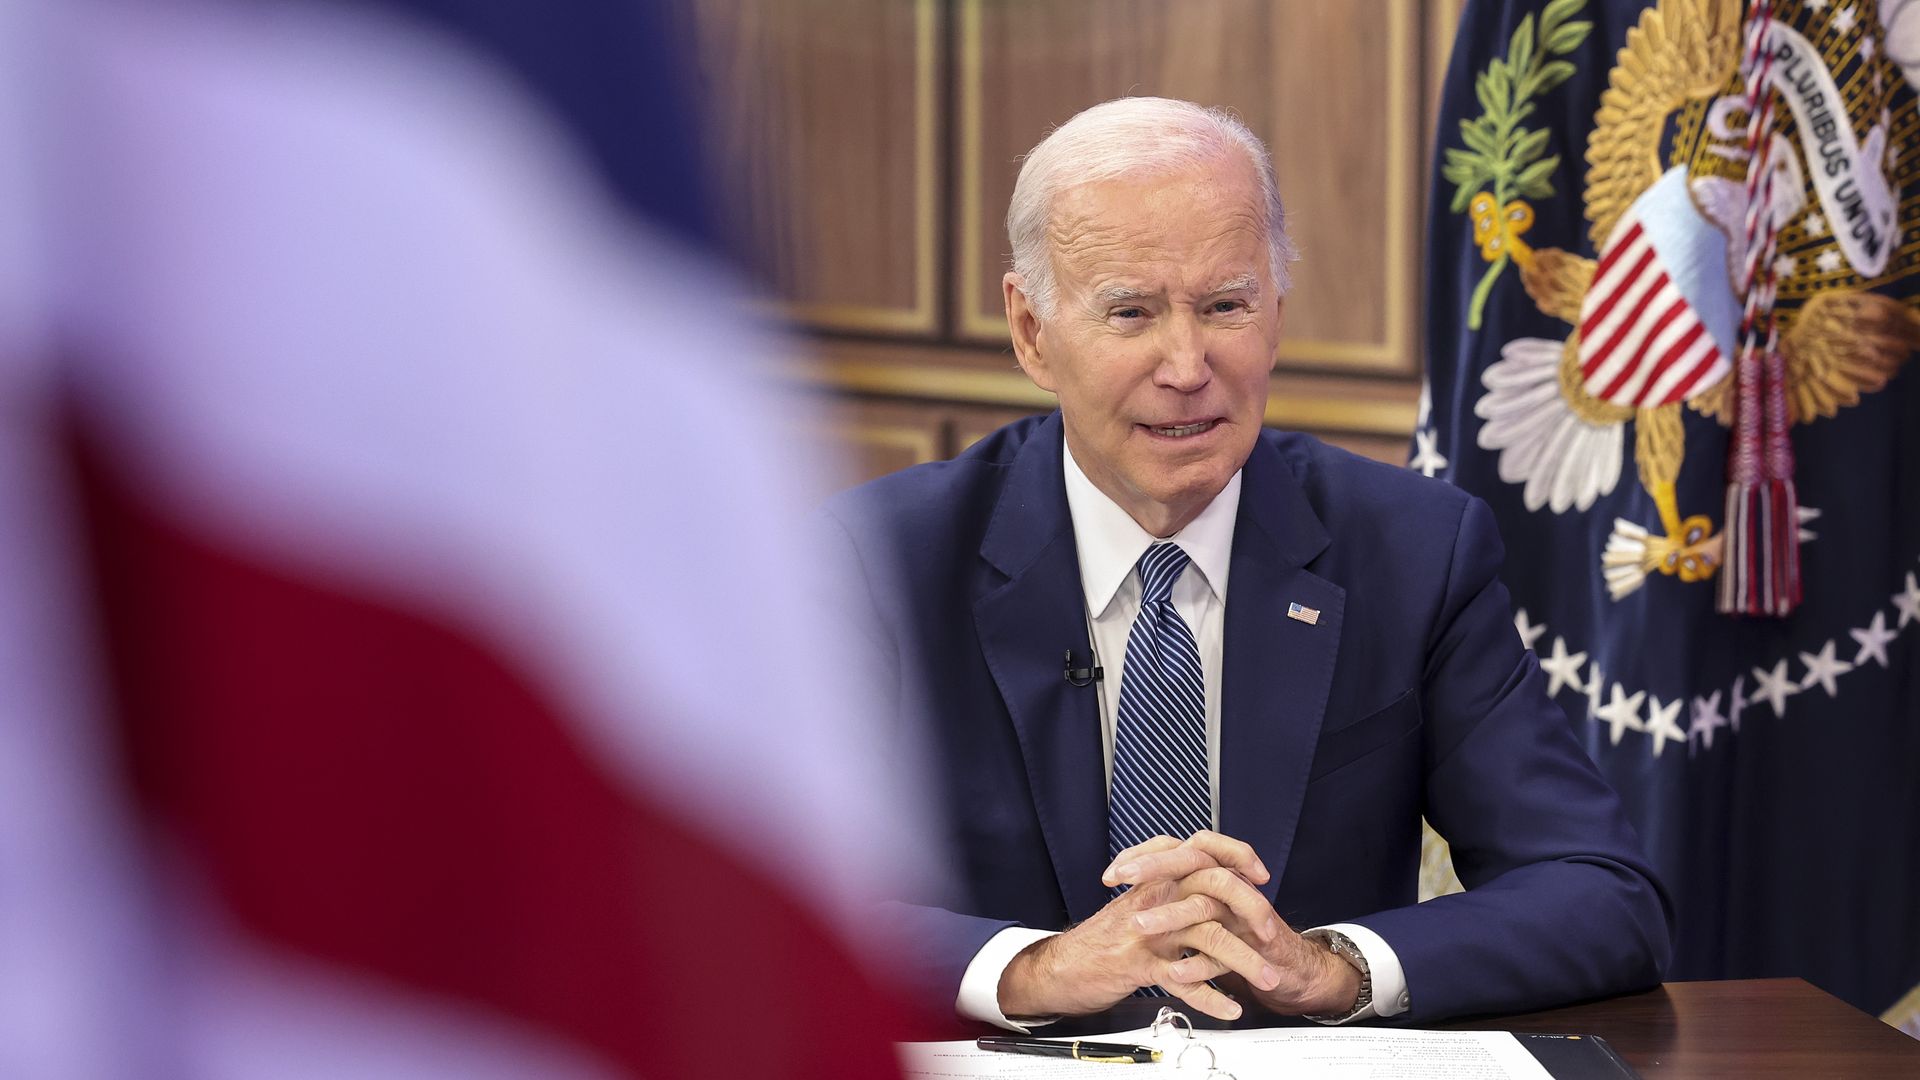 Photo of Joe Biden speaking from a desk